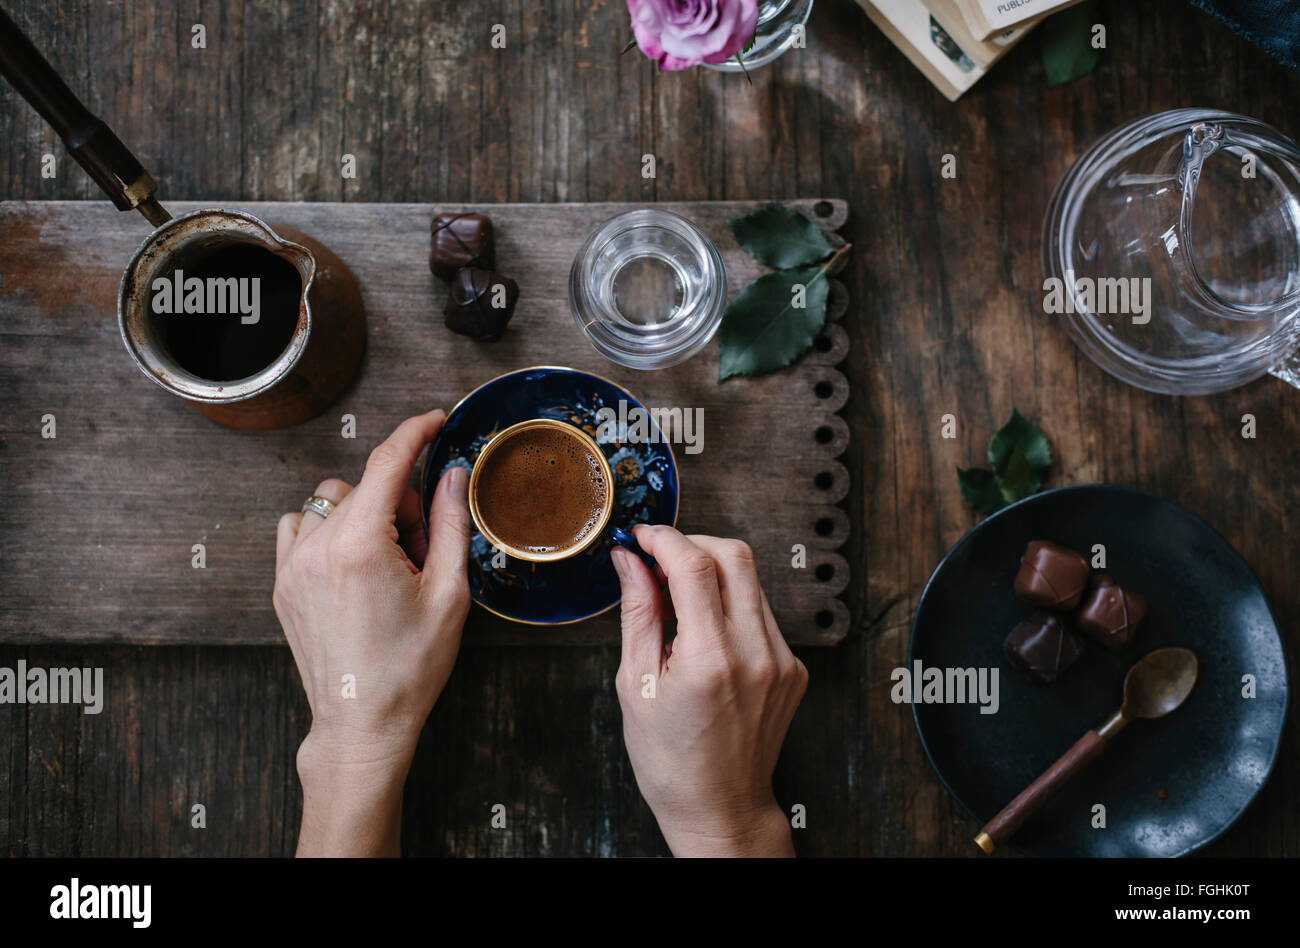 Una donna è in possesso di una tazza di caffè turco con gomma espansa sulla parte superiore (con entrambe le mani) che è servita con acqua e cioccolato. Fotografi Foto Stock